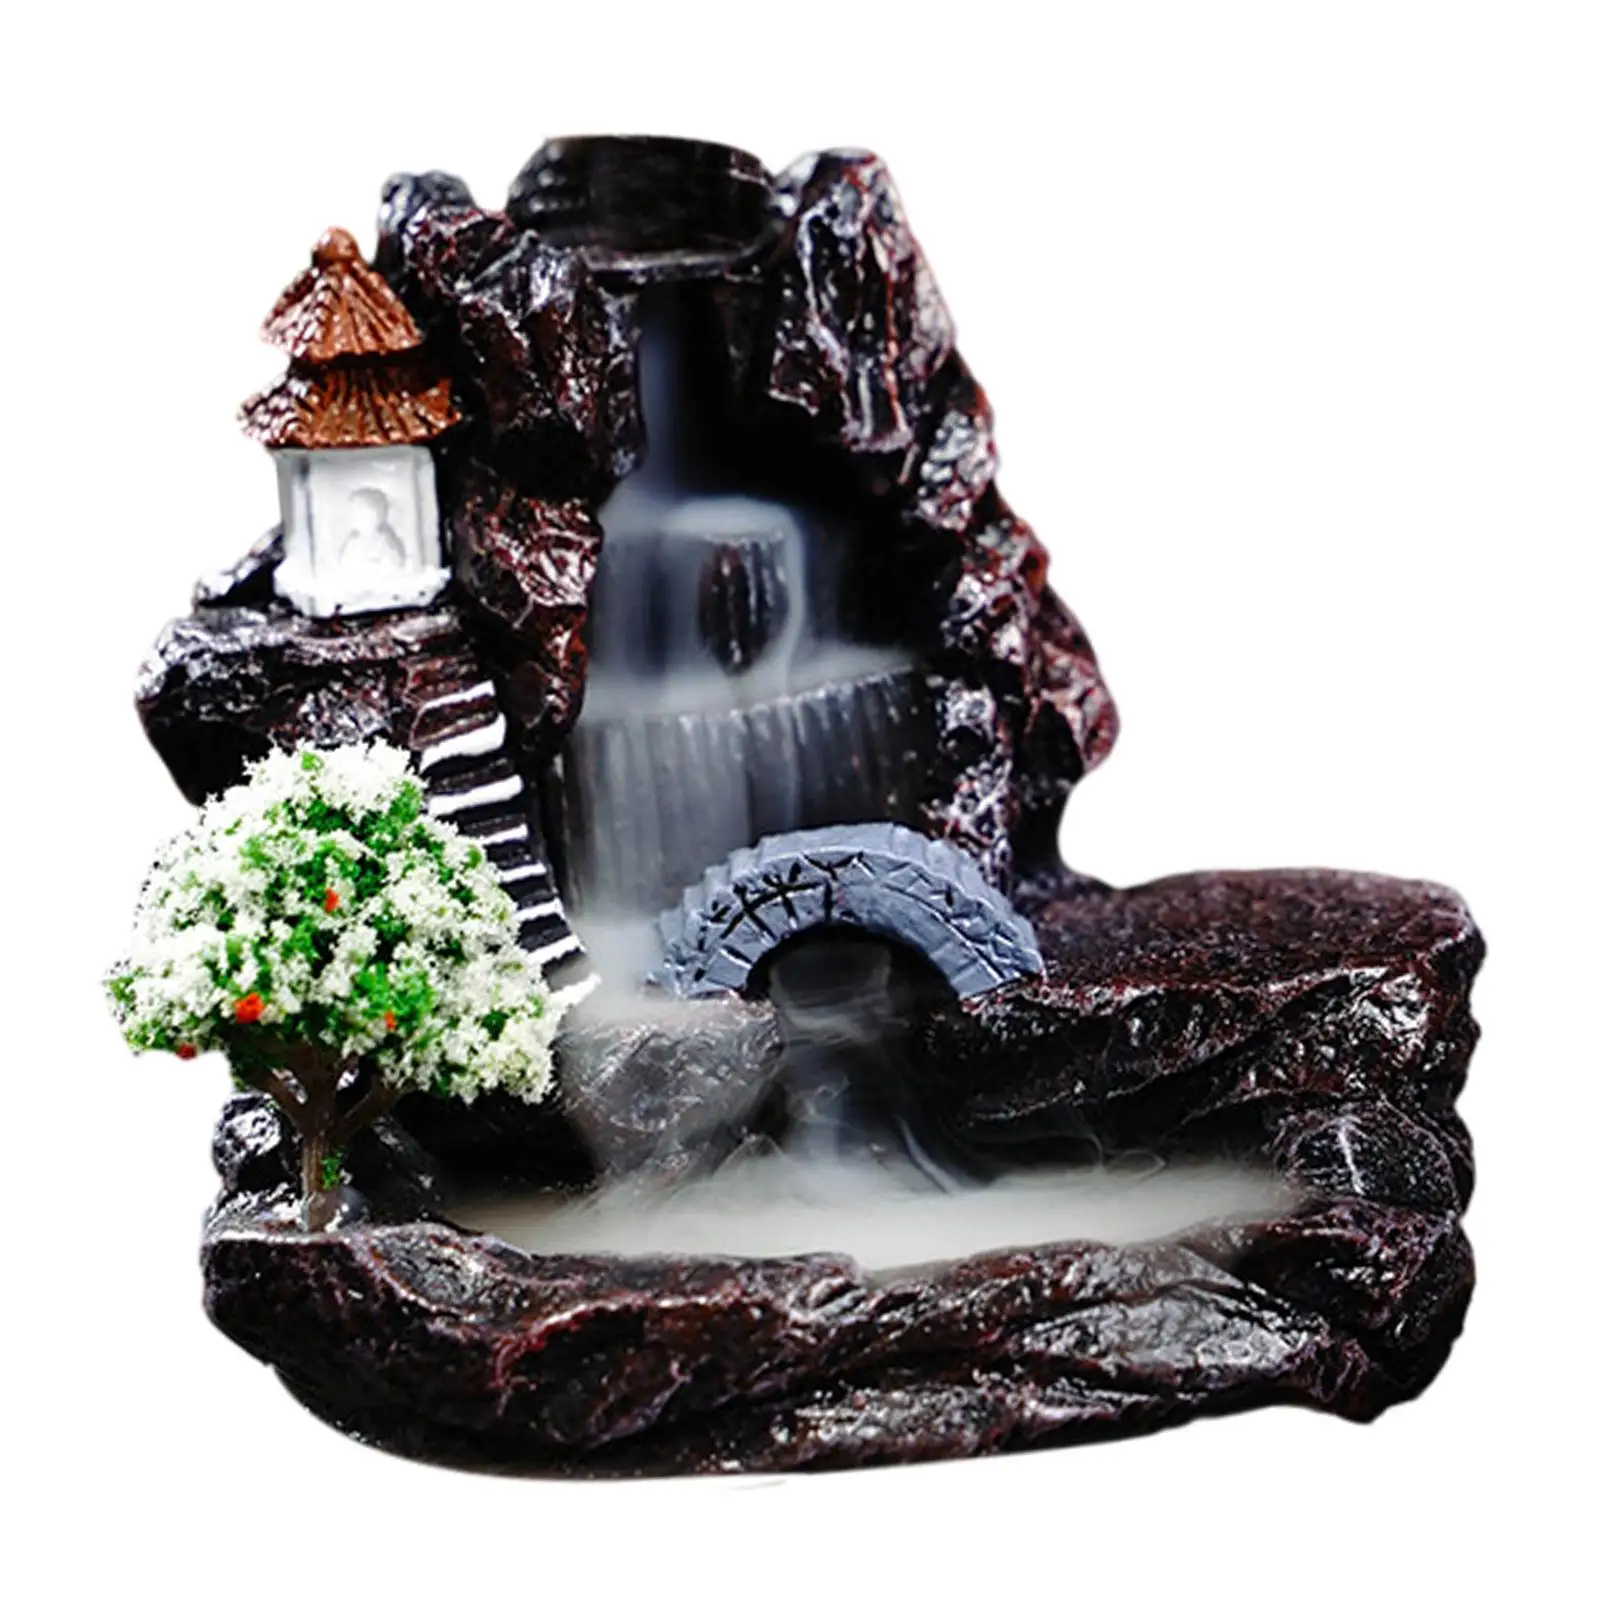 Waterfall Incense Burner Backflow Incense Burner Statue Simple Censer Incense Cone Holder for Bedroom Table Living Room Decor